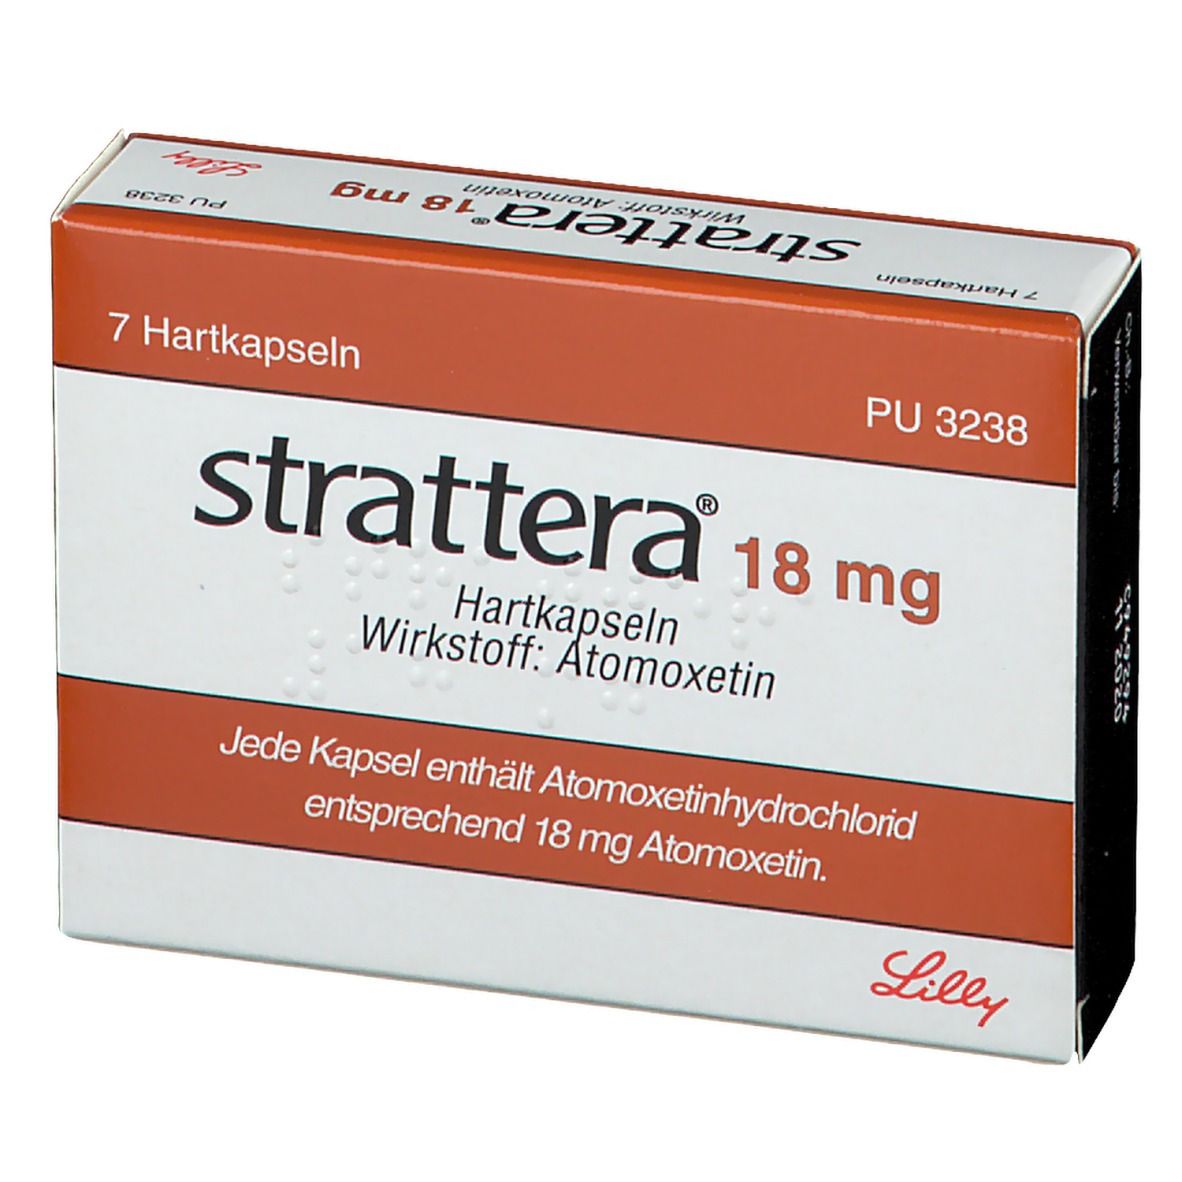 strattera® 18 mg